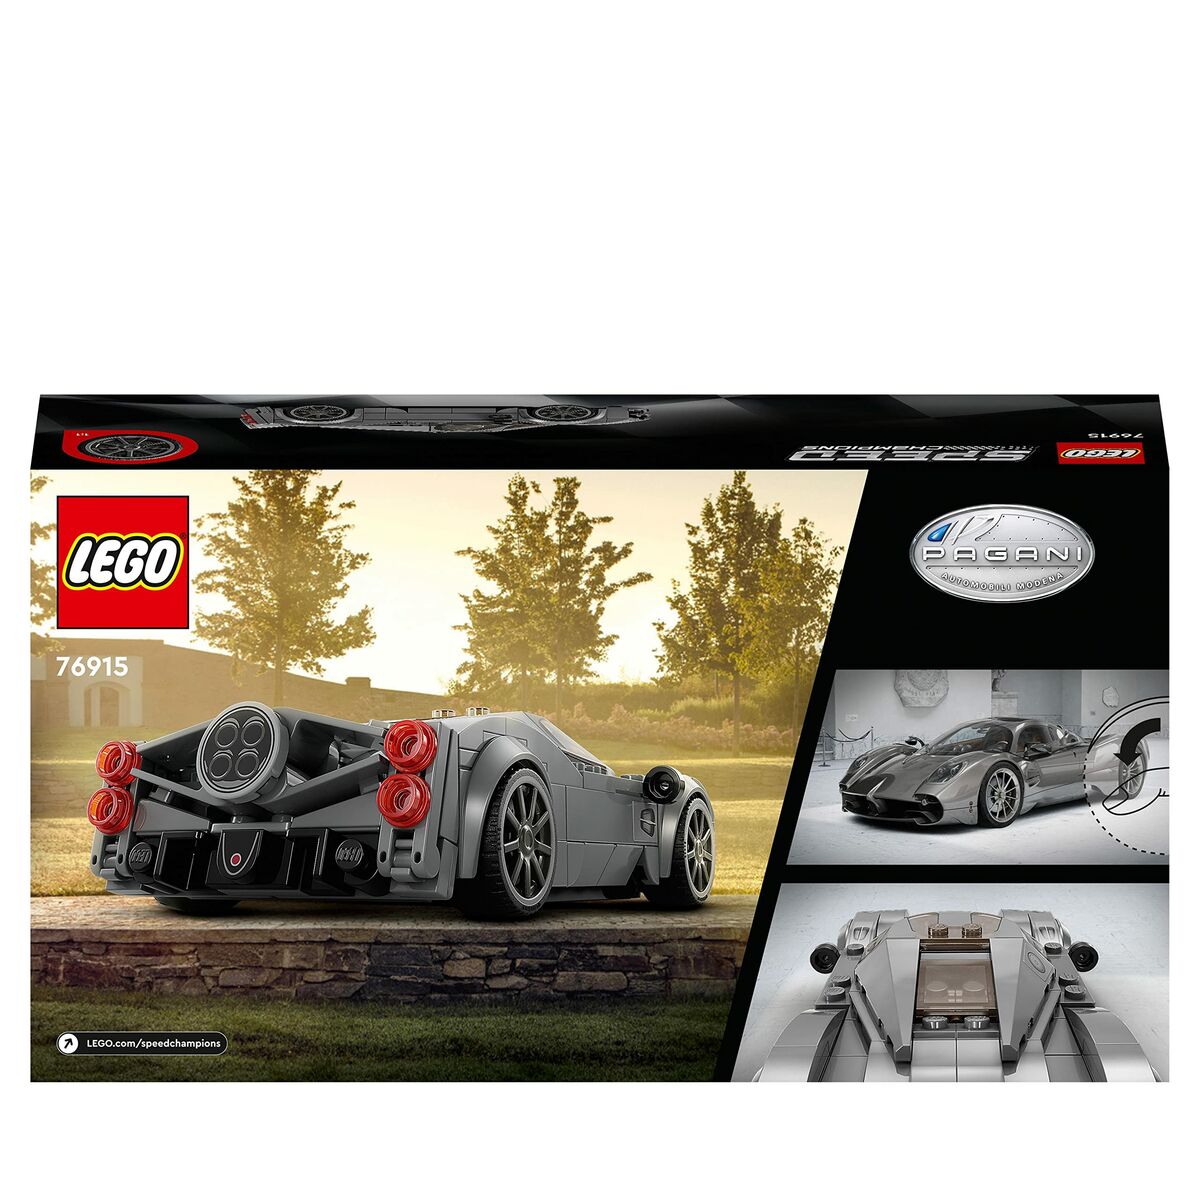 Playset Lego Speed Champions 76915 Pagani Utopia - Disponibile in 3-4 giorni lavorativi